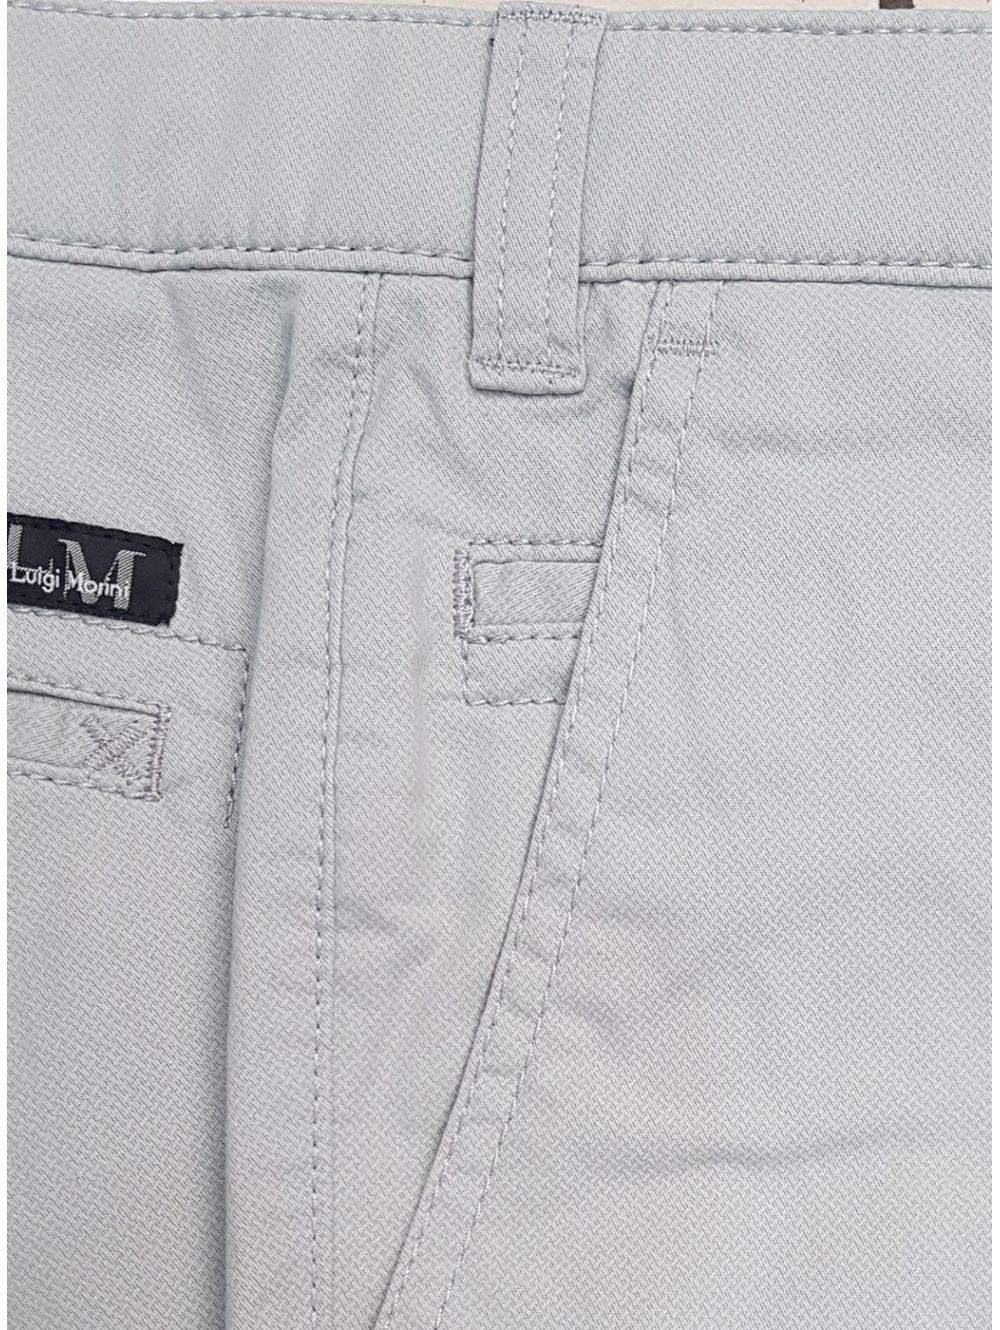 LUIGI MORINI Men's Italian classic trousers Agro 87, 39-4266 / 03 ...